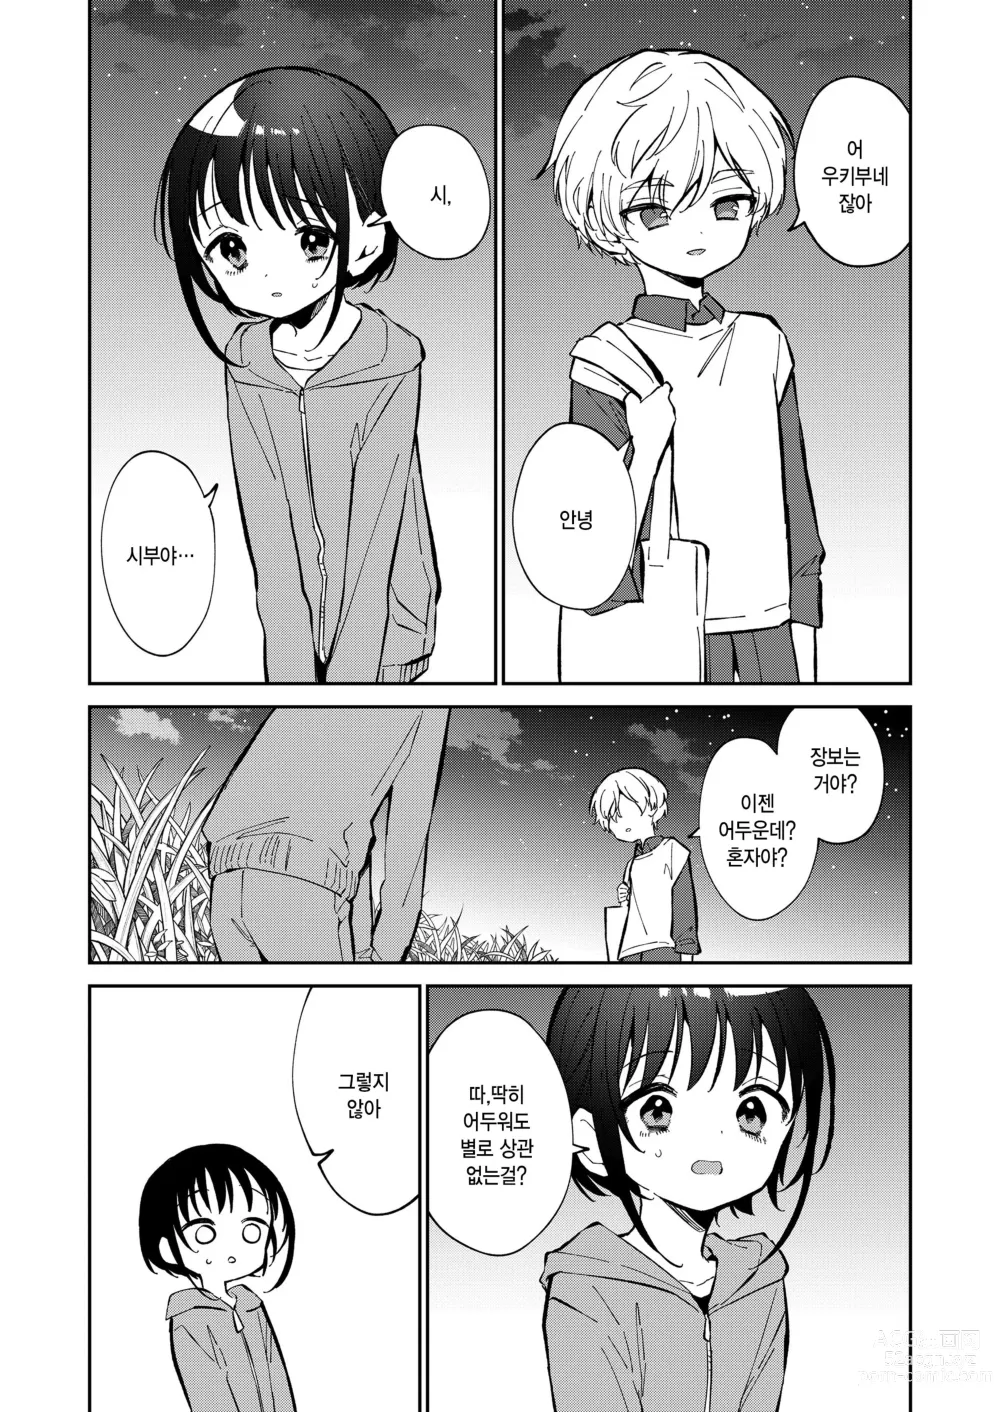 Page 30 of manga Watashi ga iki wo shiteru basho